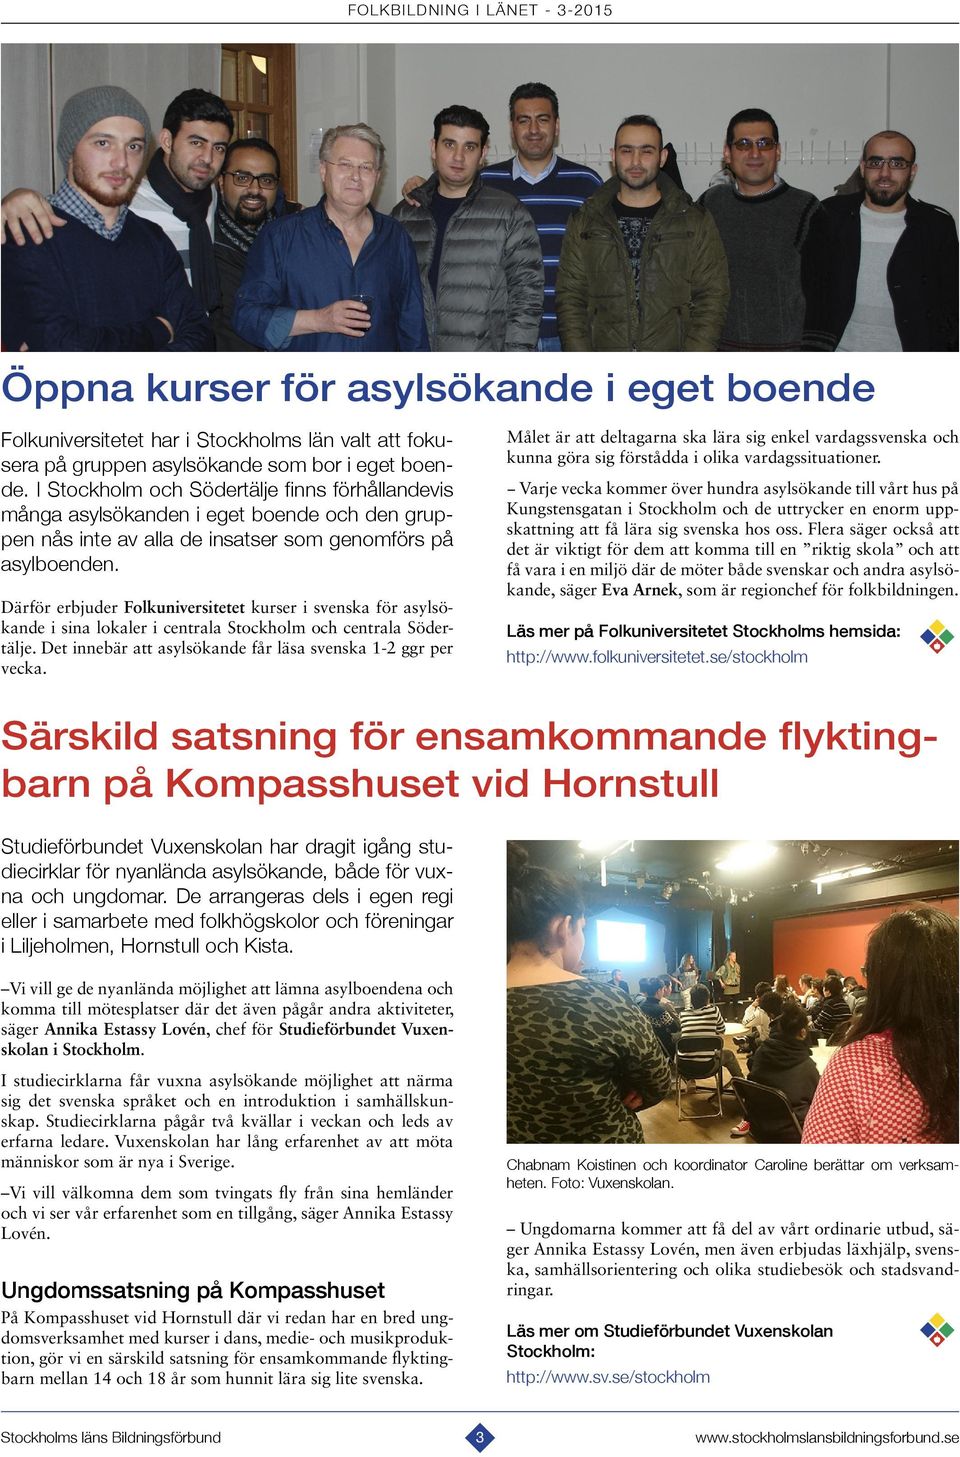 Därför erbjuder Folkuniversitetet kurser i svenska för asylsökande i sina lokaler i centrala Stockholm och centrala Södertälje. Det innebär att asylsökande får läsa svenska 1-2 ggr per vecka.